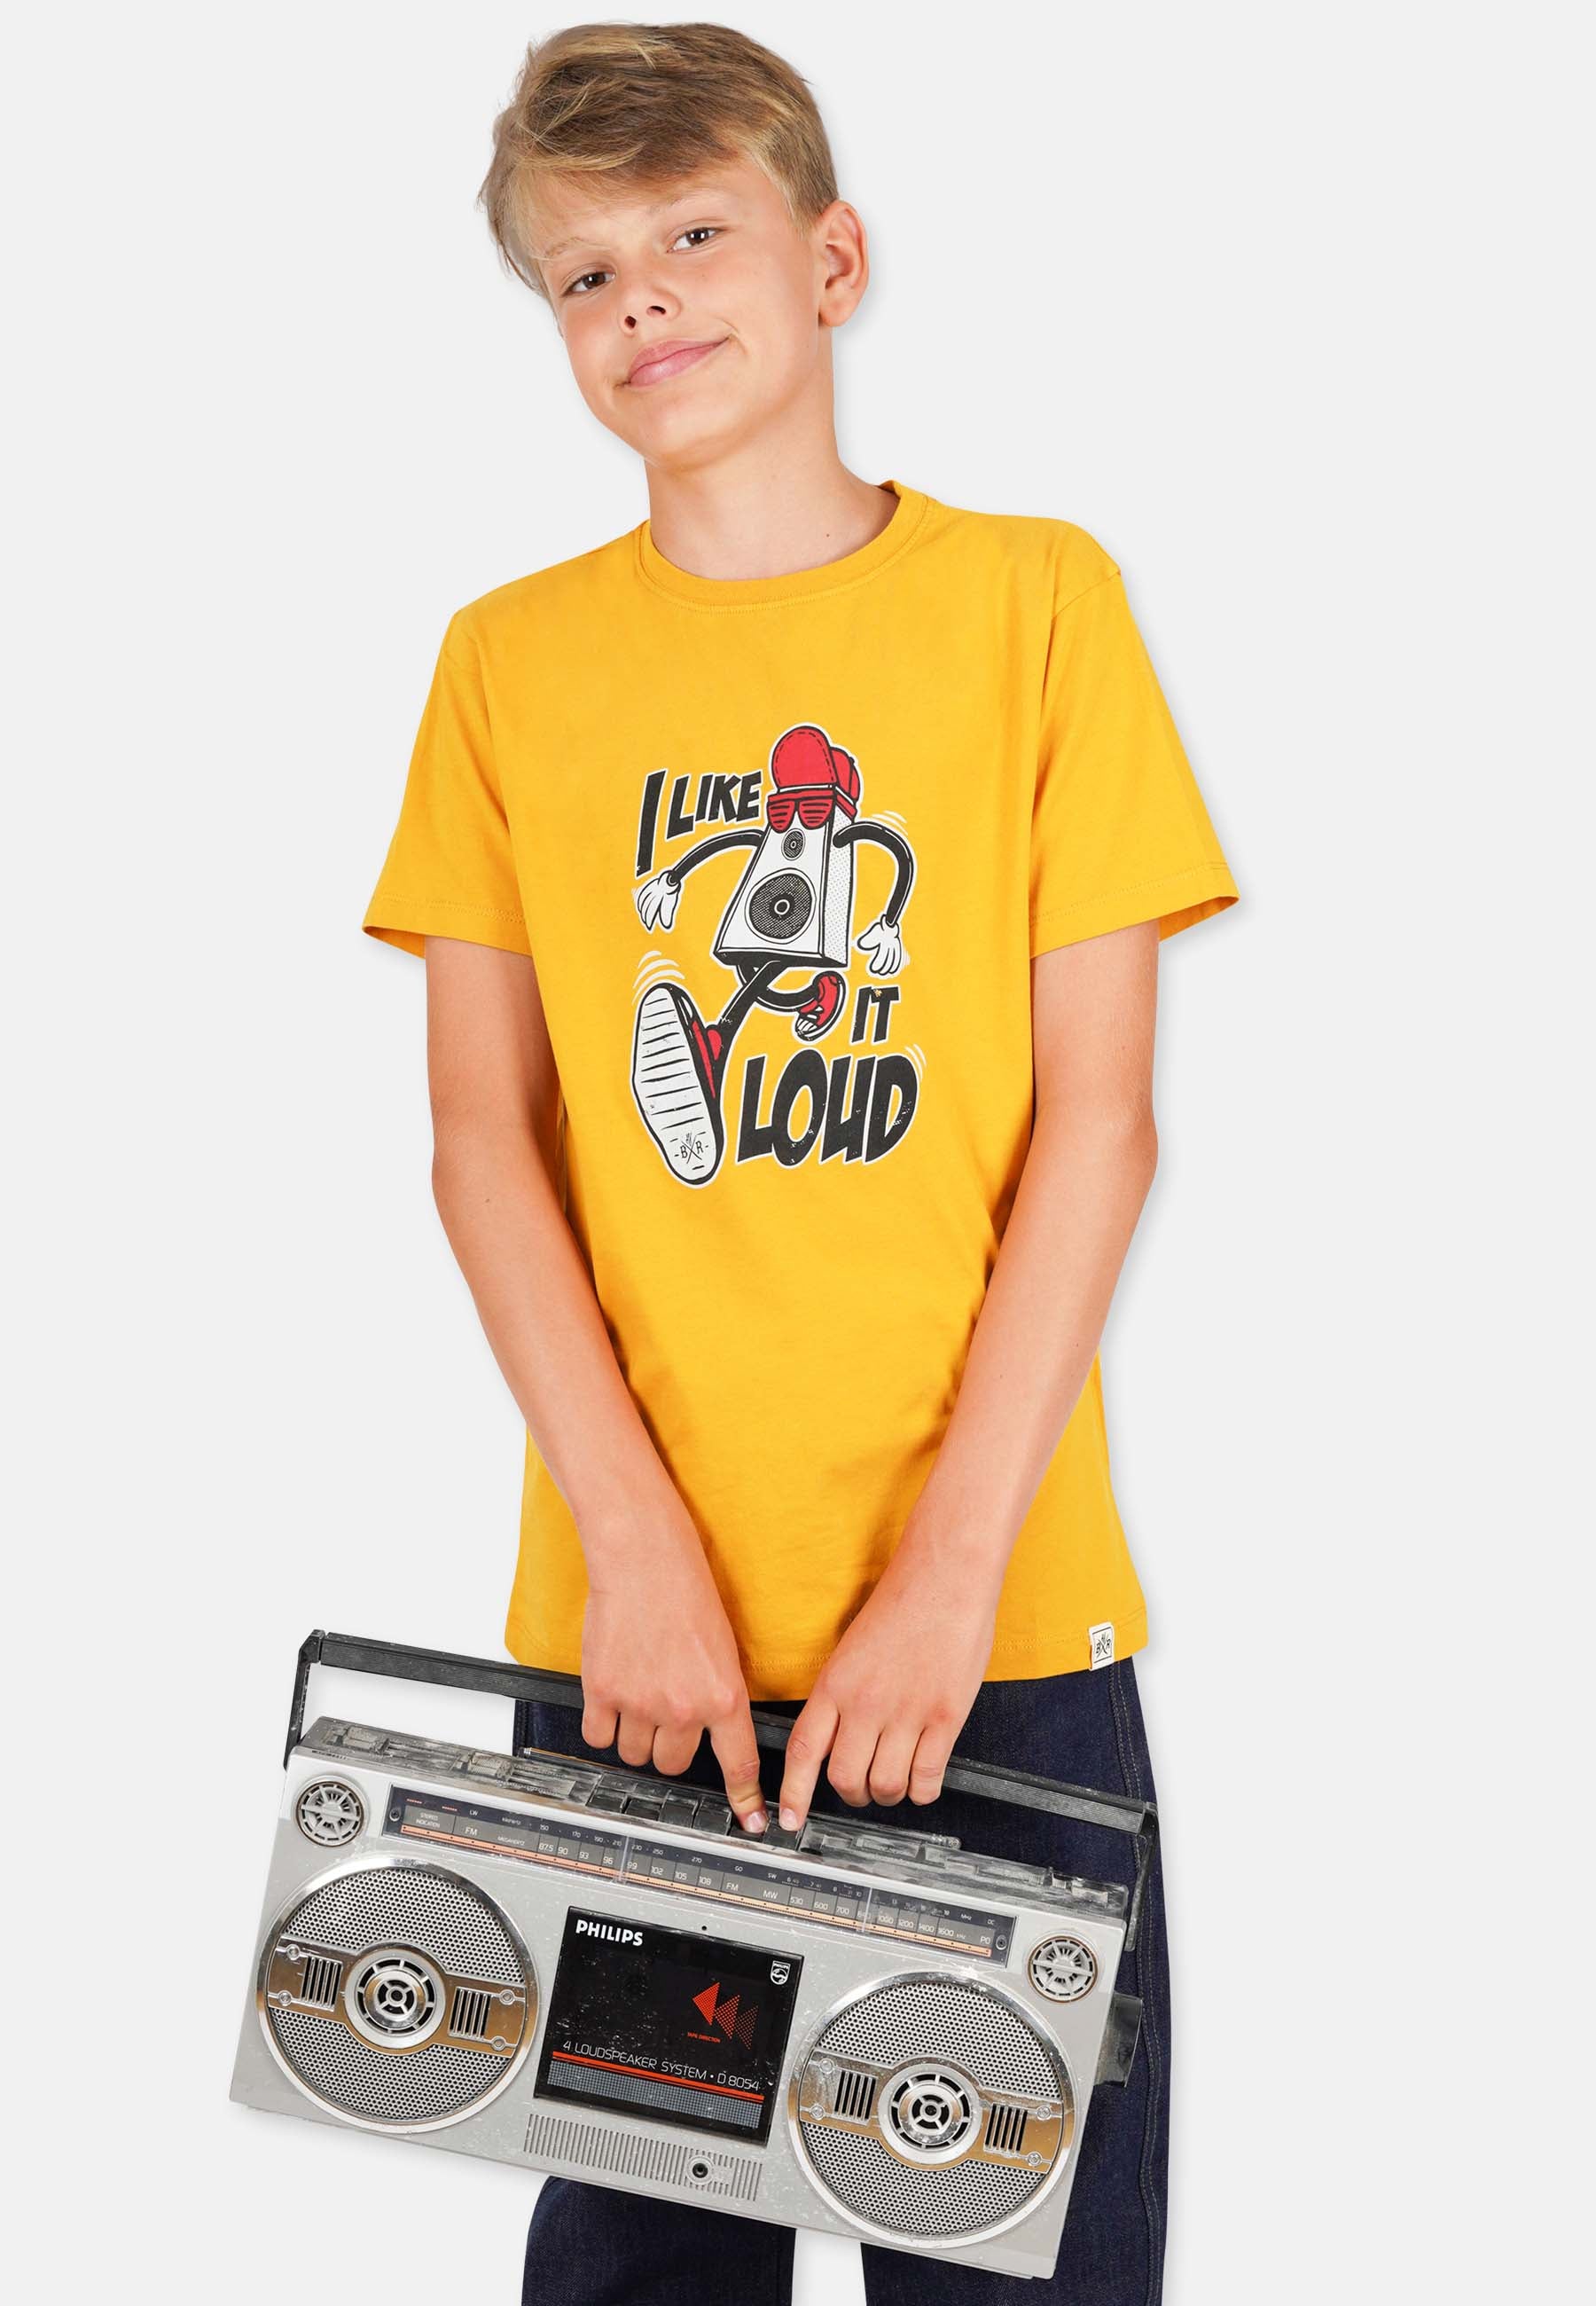 Loud T-Shirt